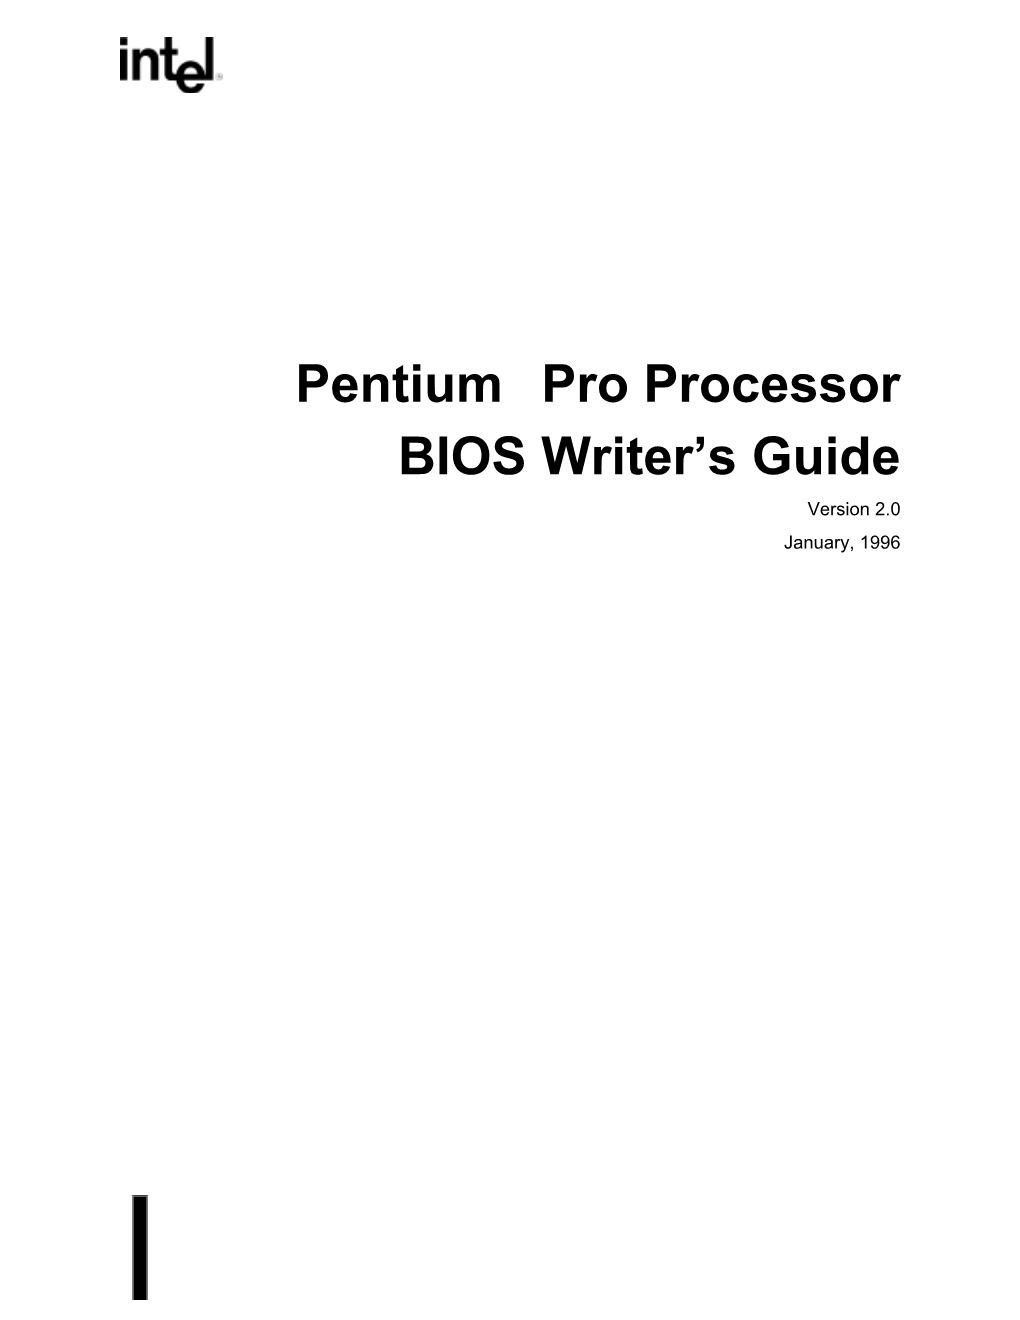 Pentium® Pro Processor BIOS Writer's Guide